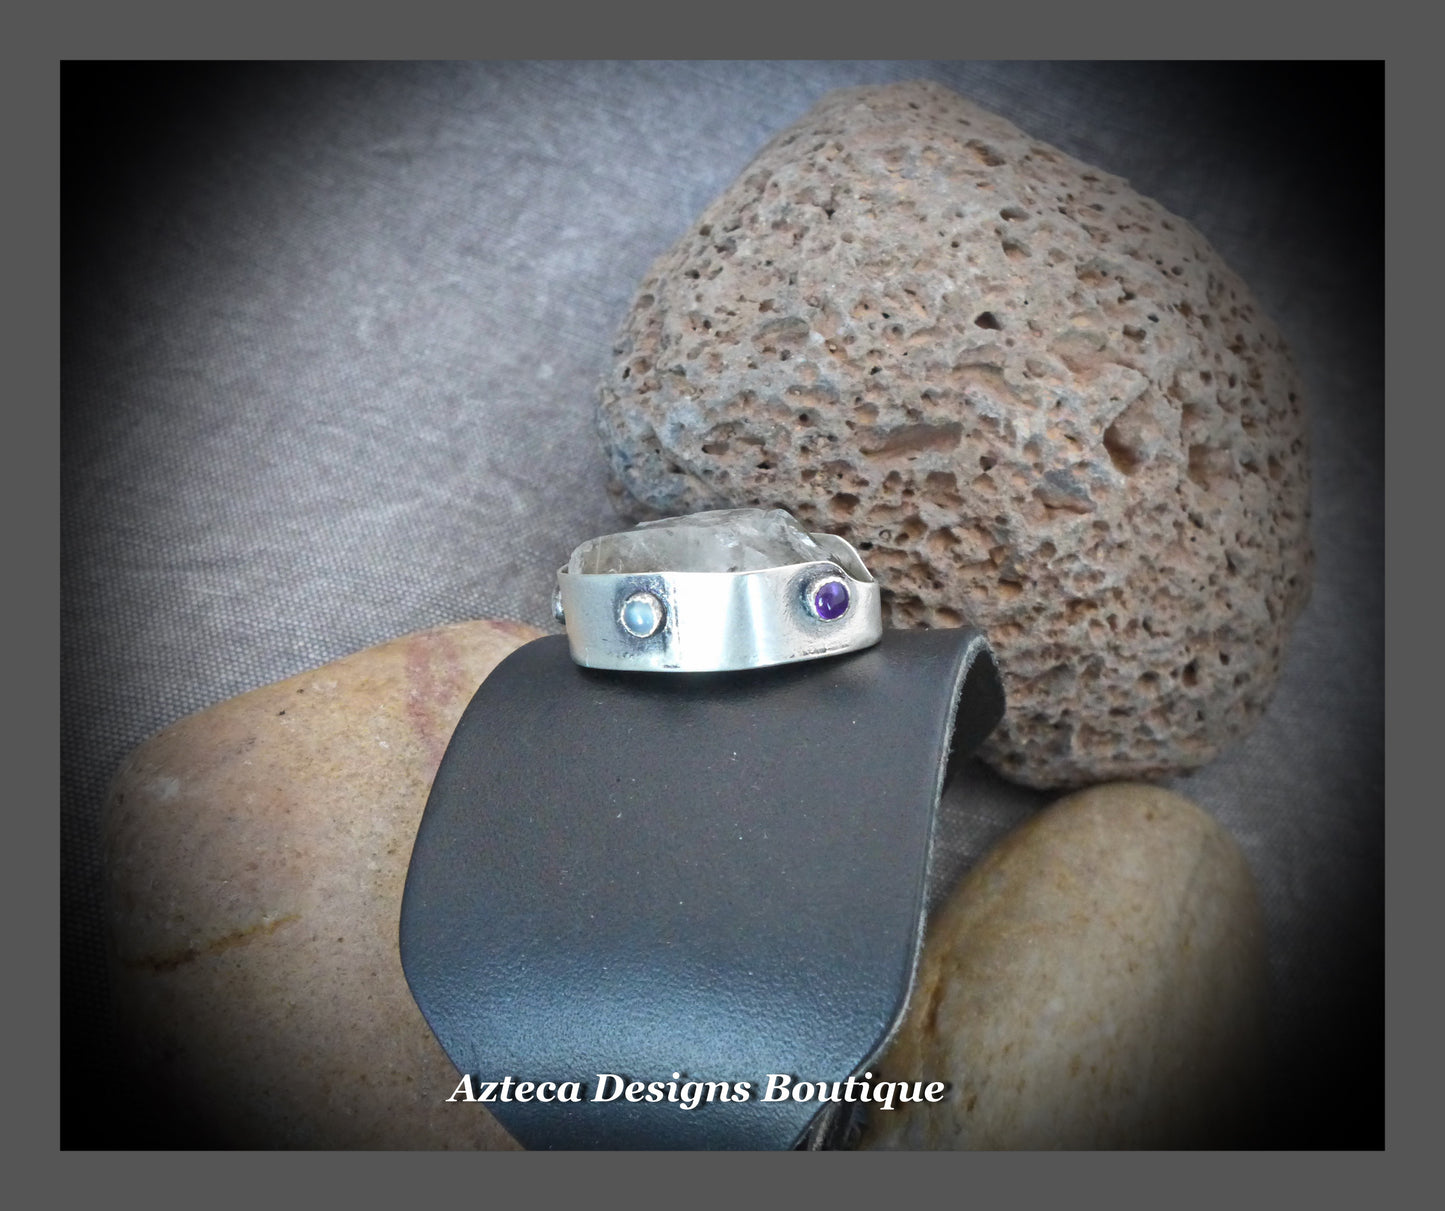 Medieval Royal+Clear Quartz Crystal+Multi Gemstone+Argentium Silver+Black Leather+Buckle Cuff Bracelet